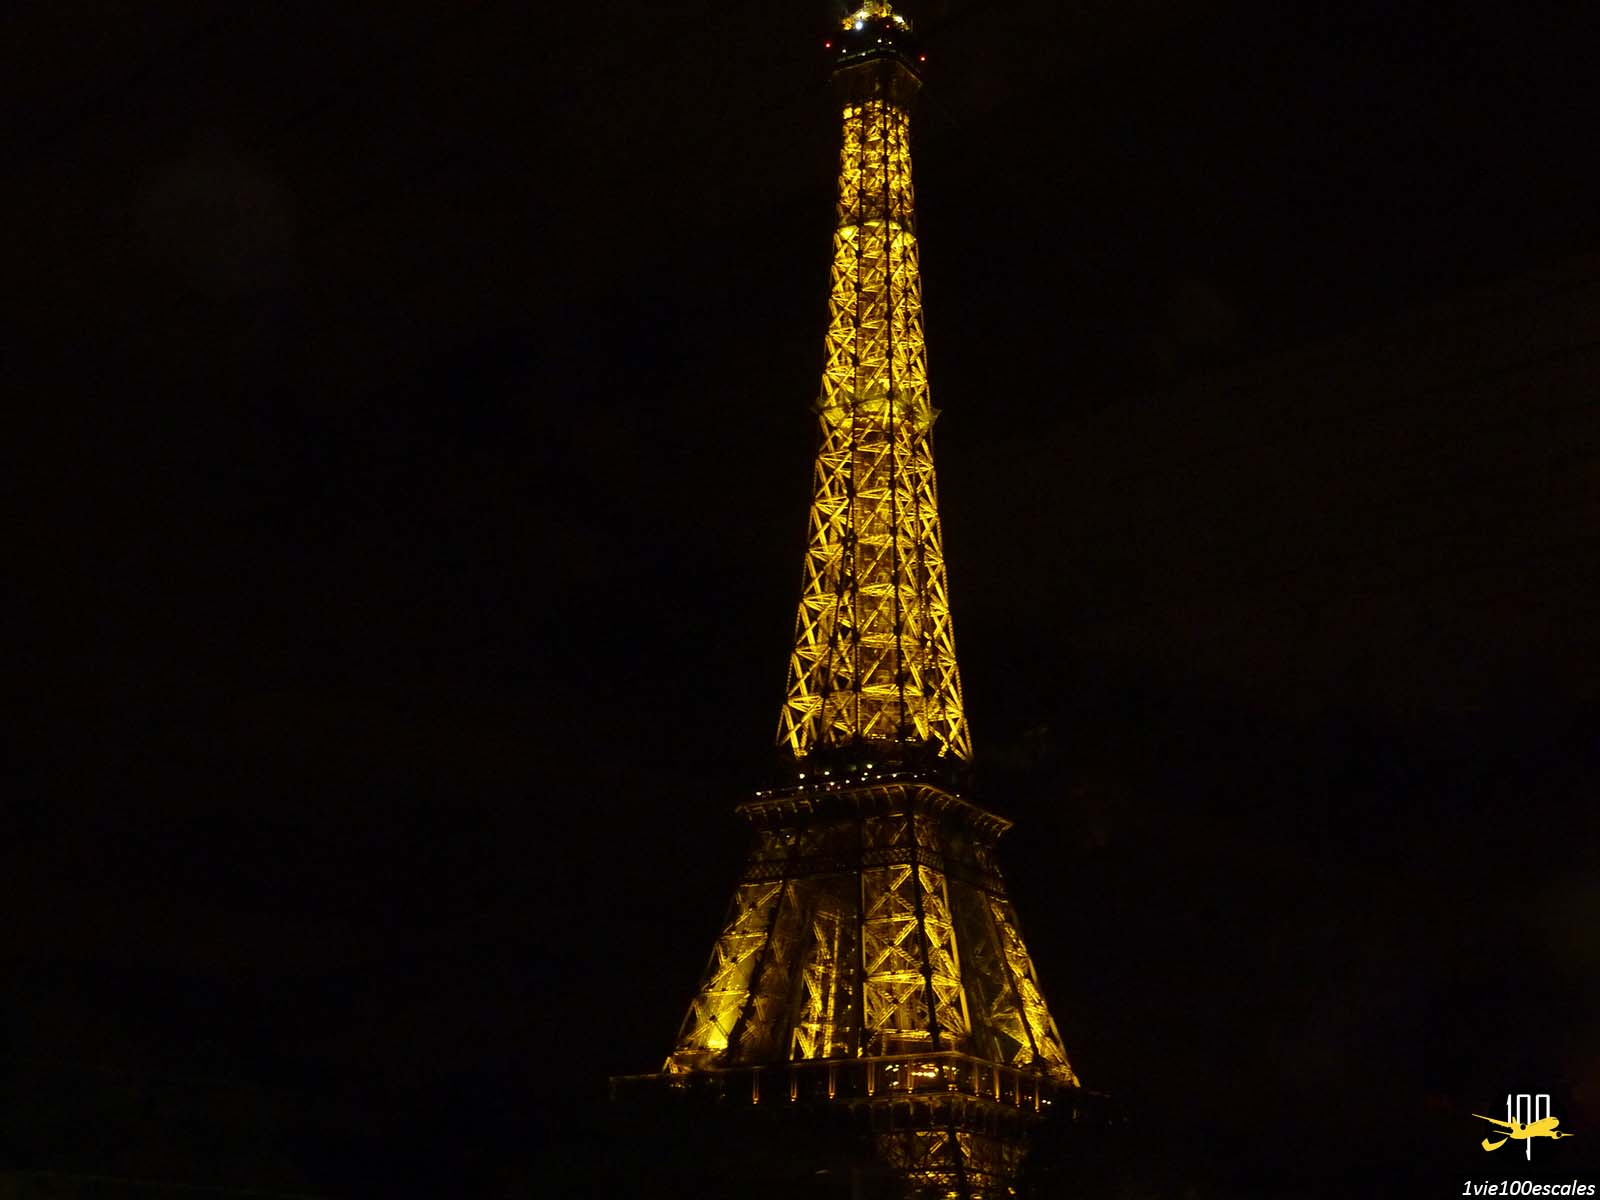 La célèbre Tour Eiffel éclairée en pleine nuit